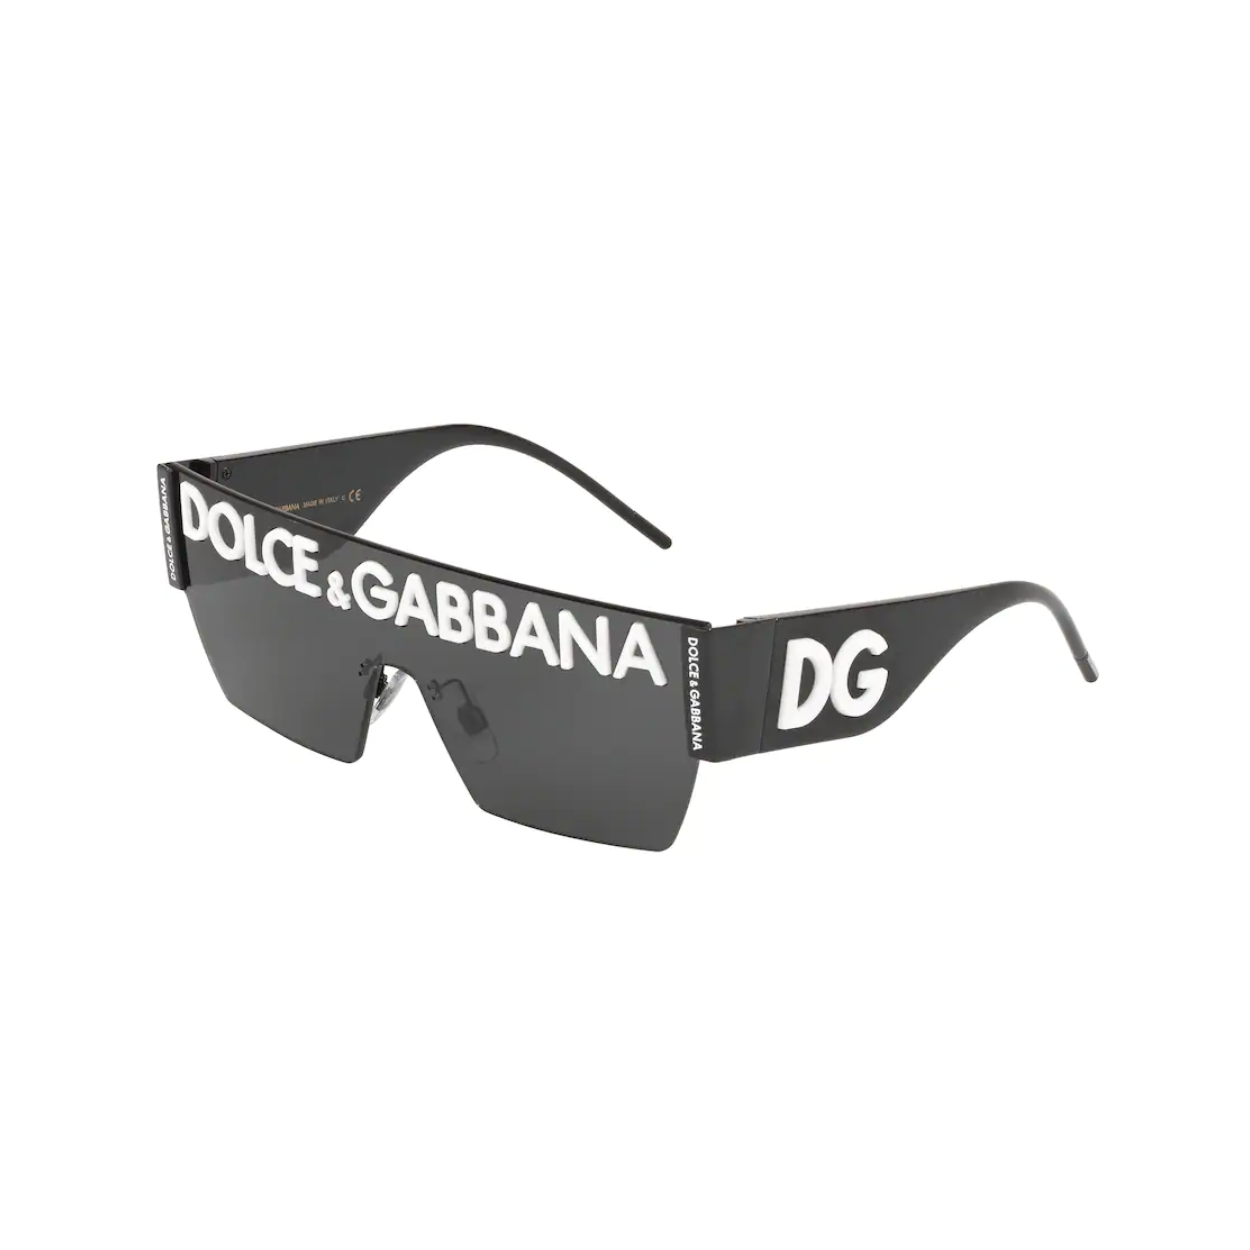 dolce & gabbana sunglasses